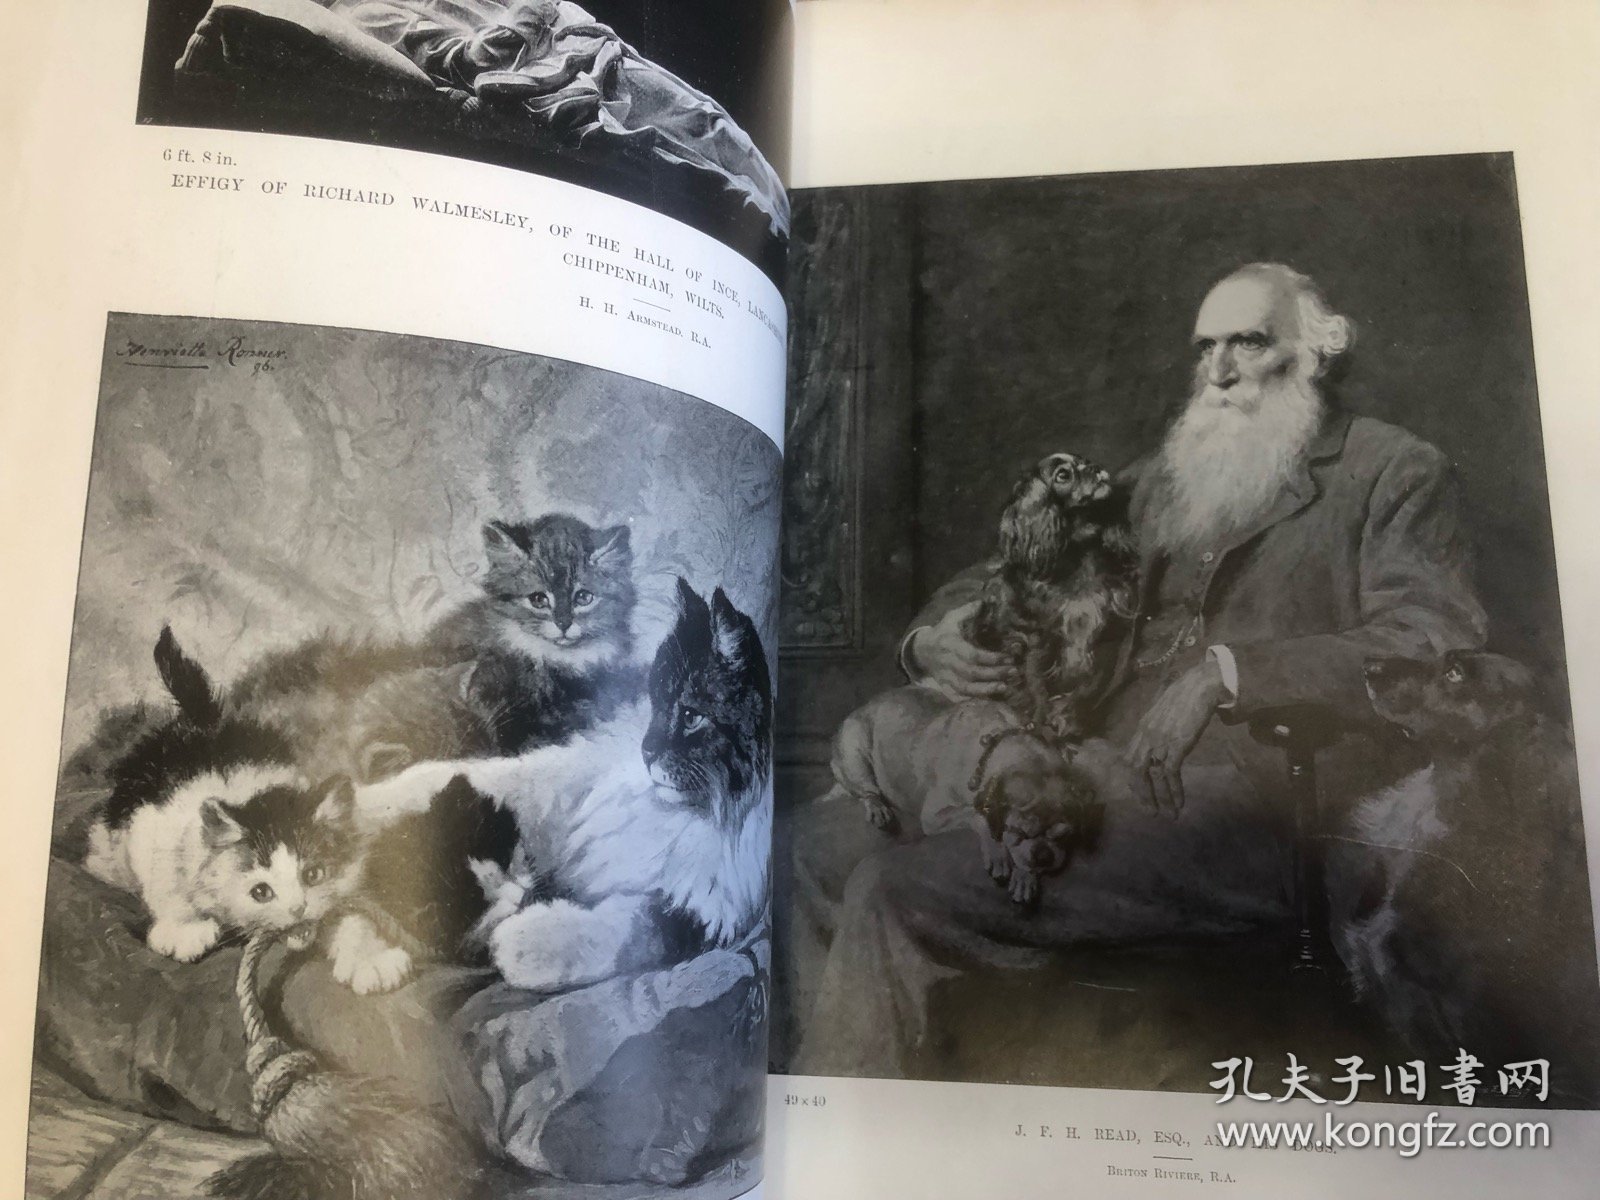 1896年出版 皇家学院图片集 196页全图册 品相较好 30.5x23.5x1.5公分 漆布精装